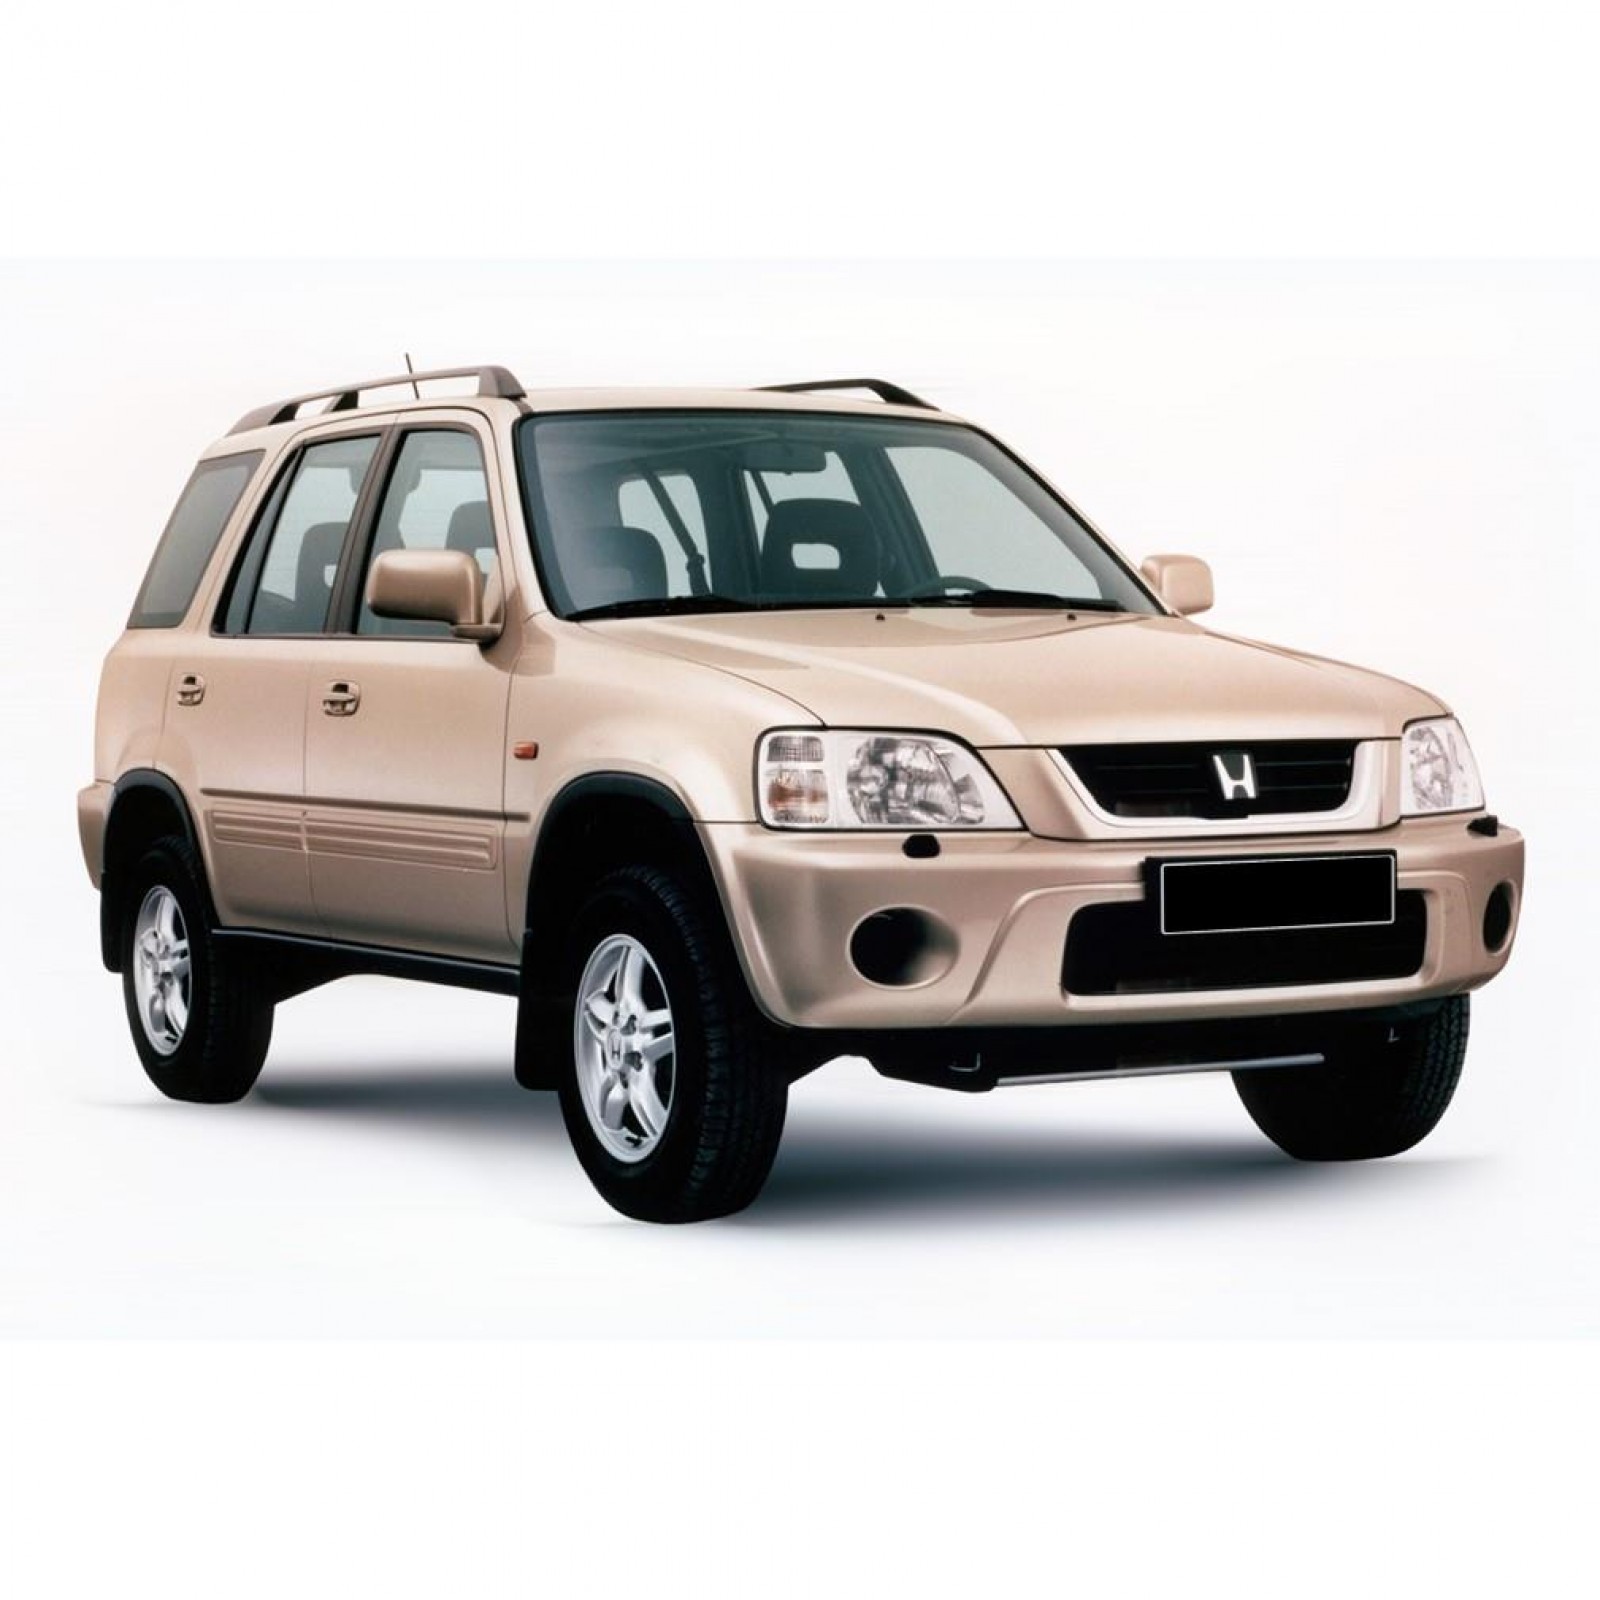 Honda crv 1 купить. Honda CR-V 2001. Honda CR-V rd1. Honda CRV rd1. Honda CR-V rd1 2001.